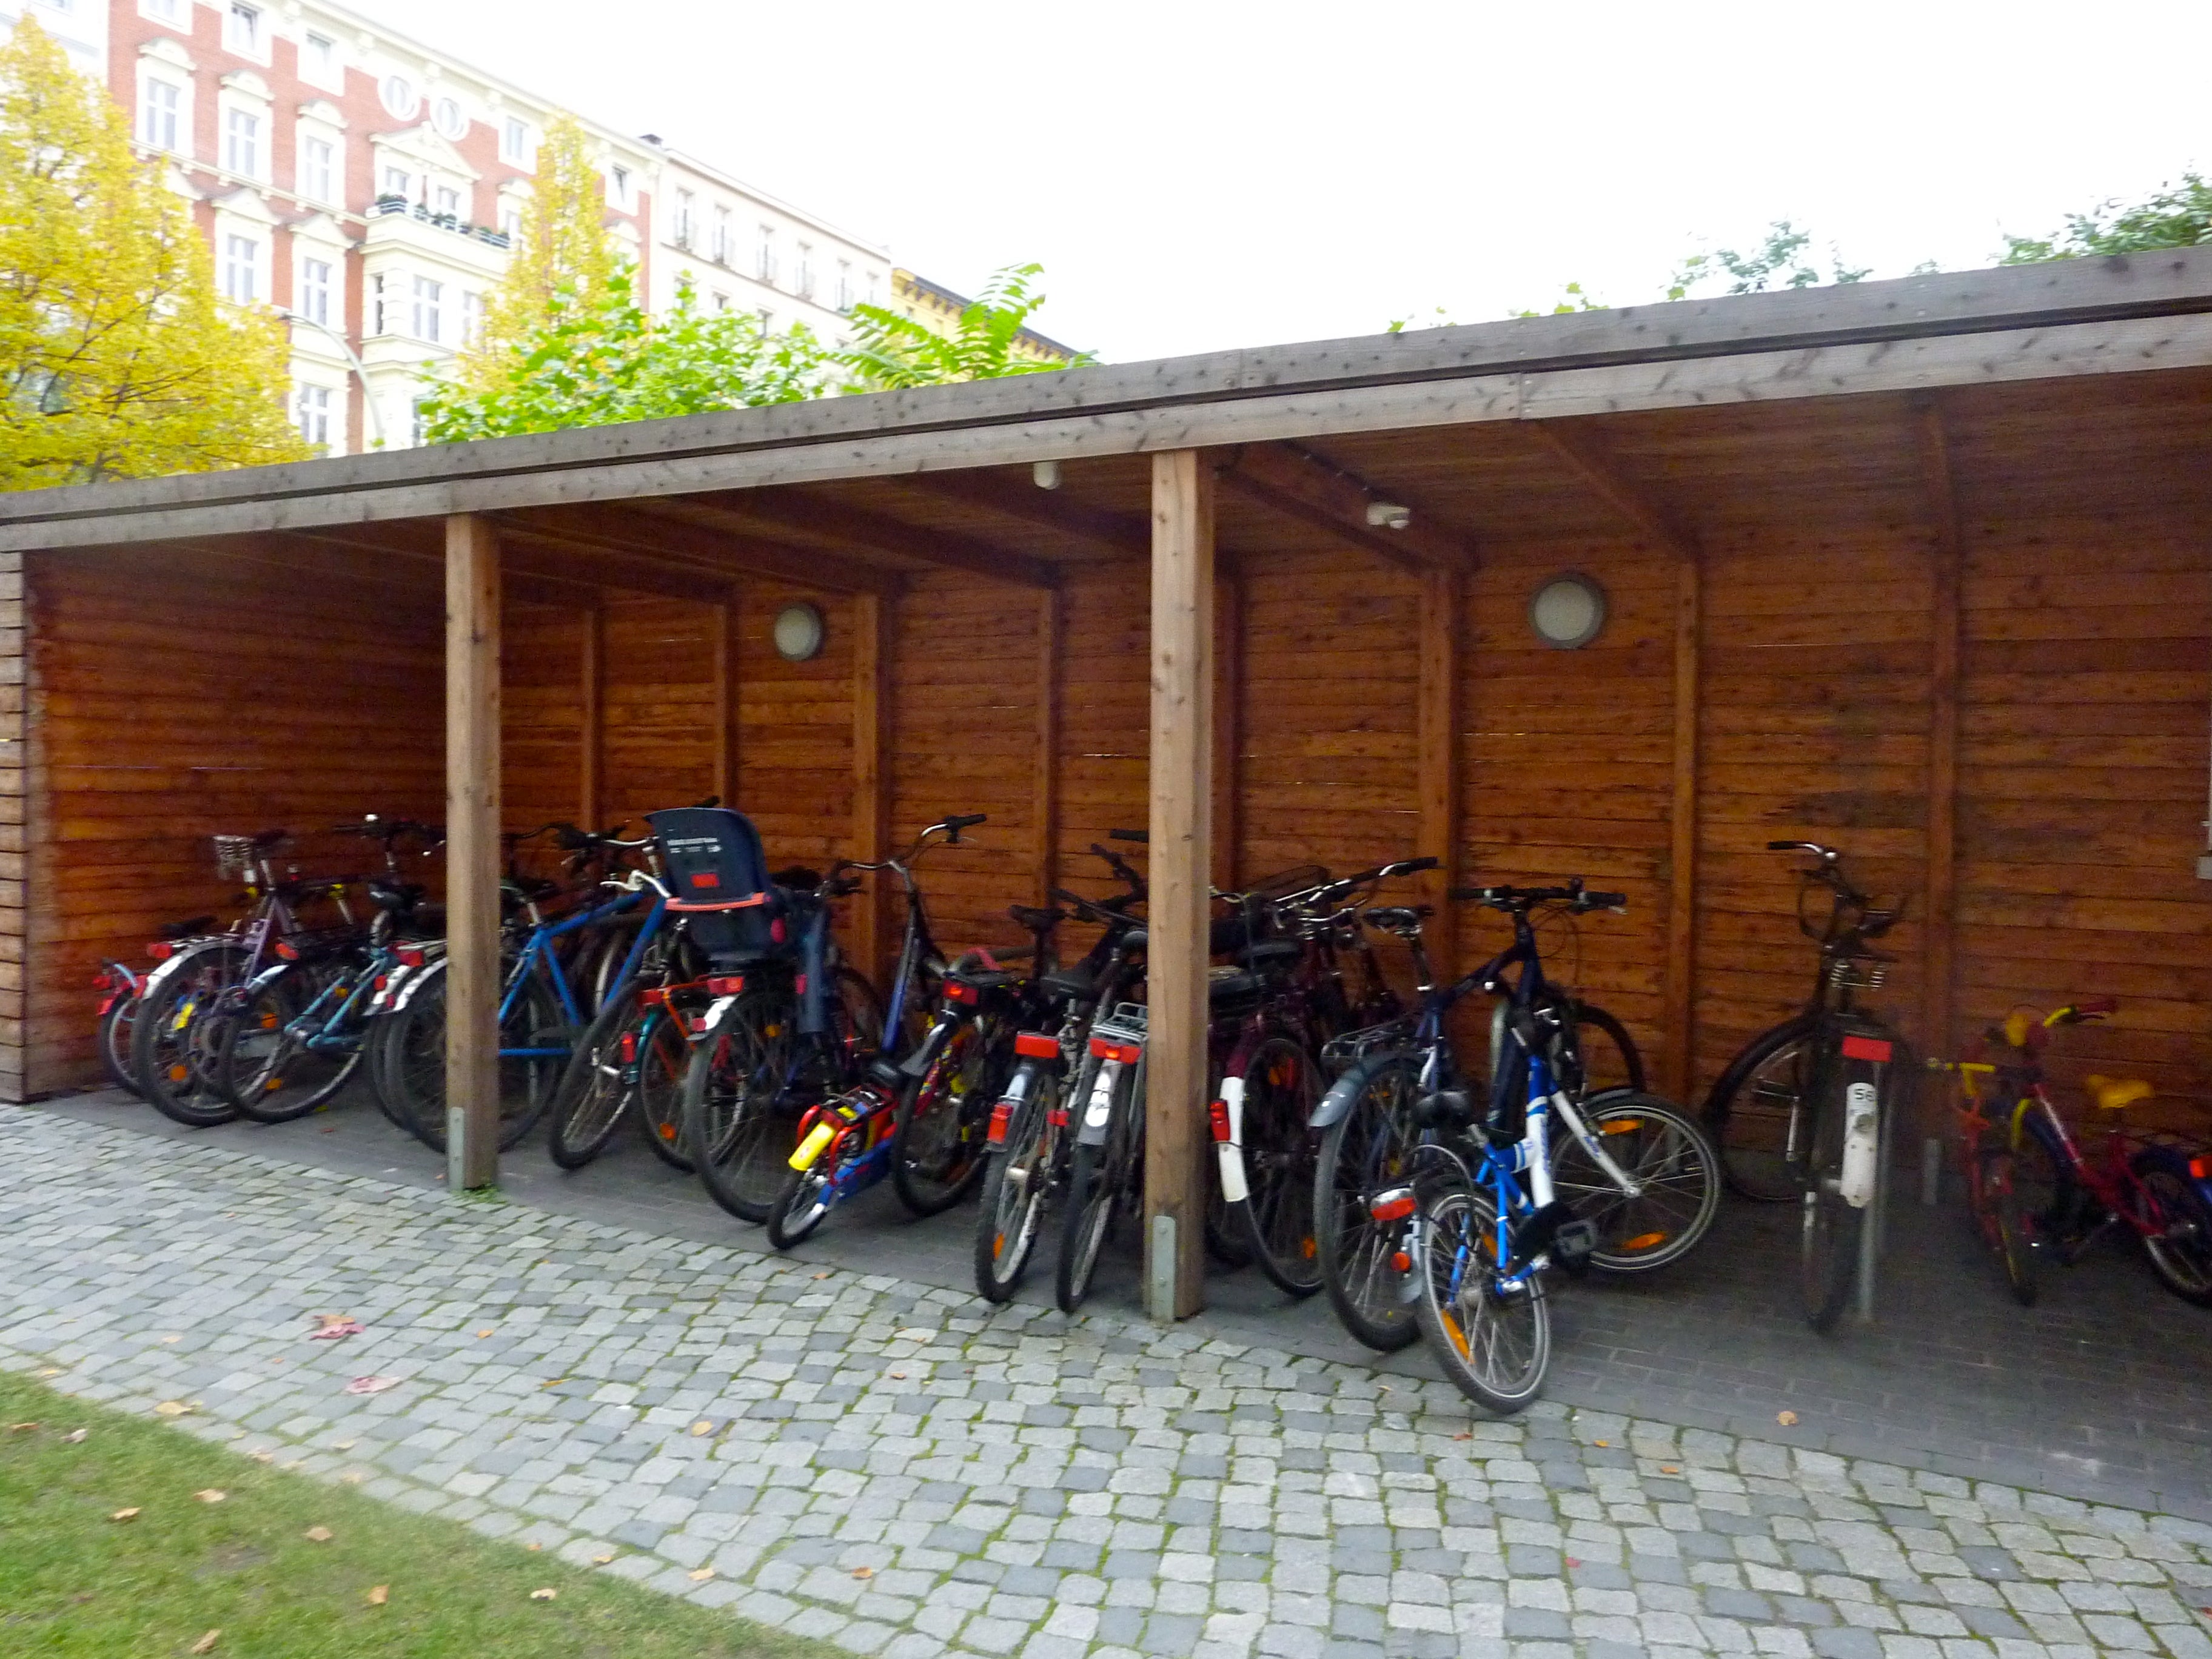 Sheltered bike parking